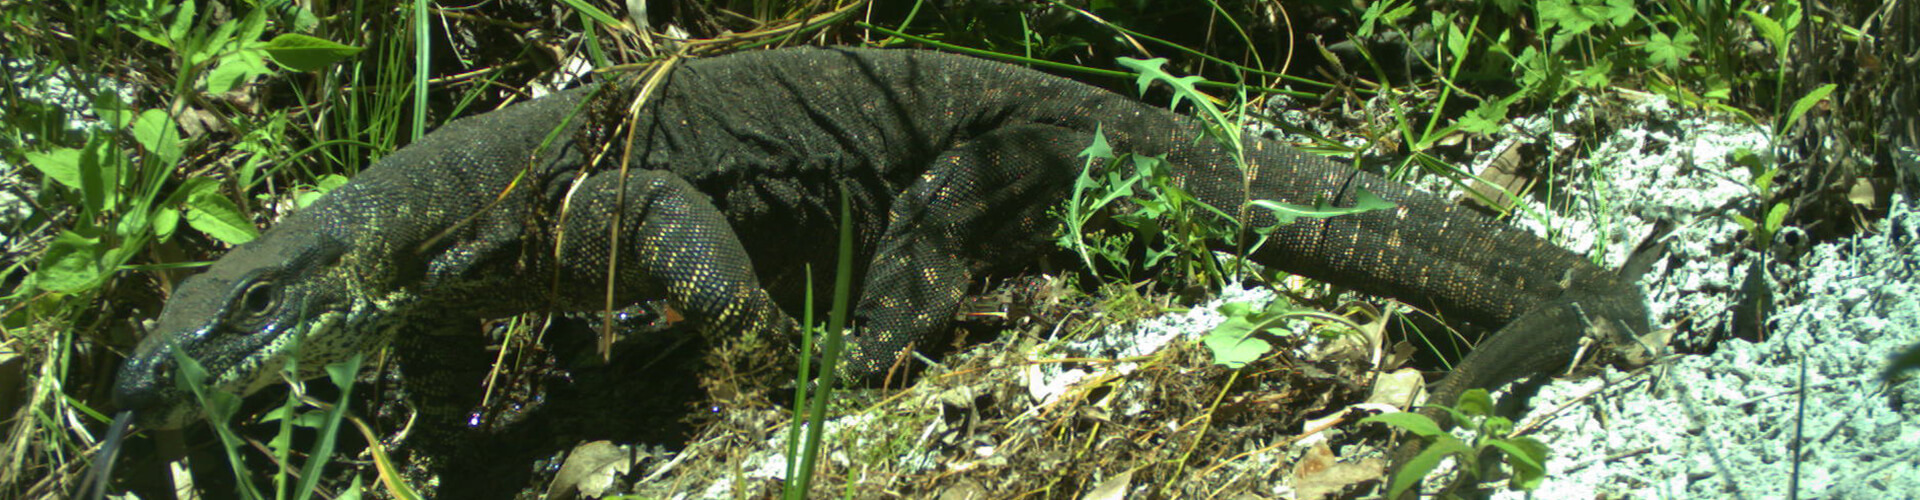 lizard in bush area